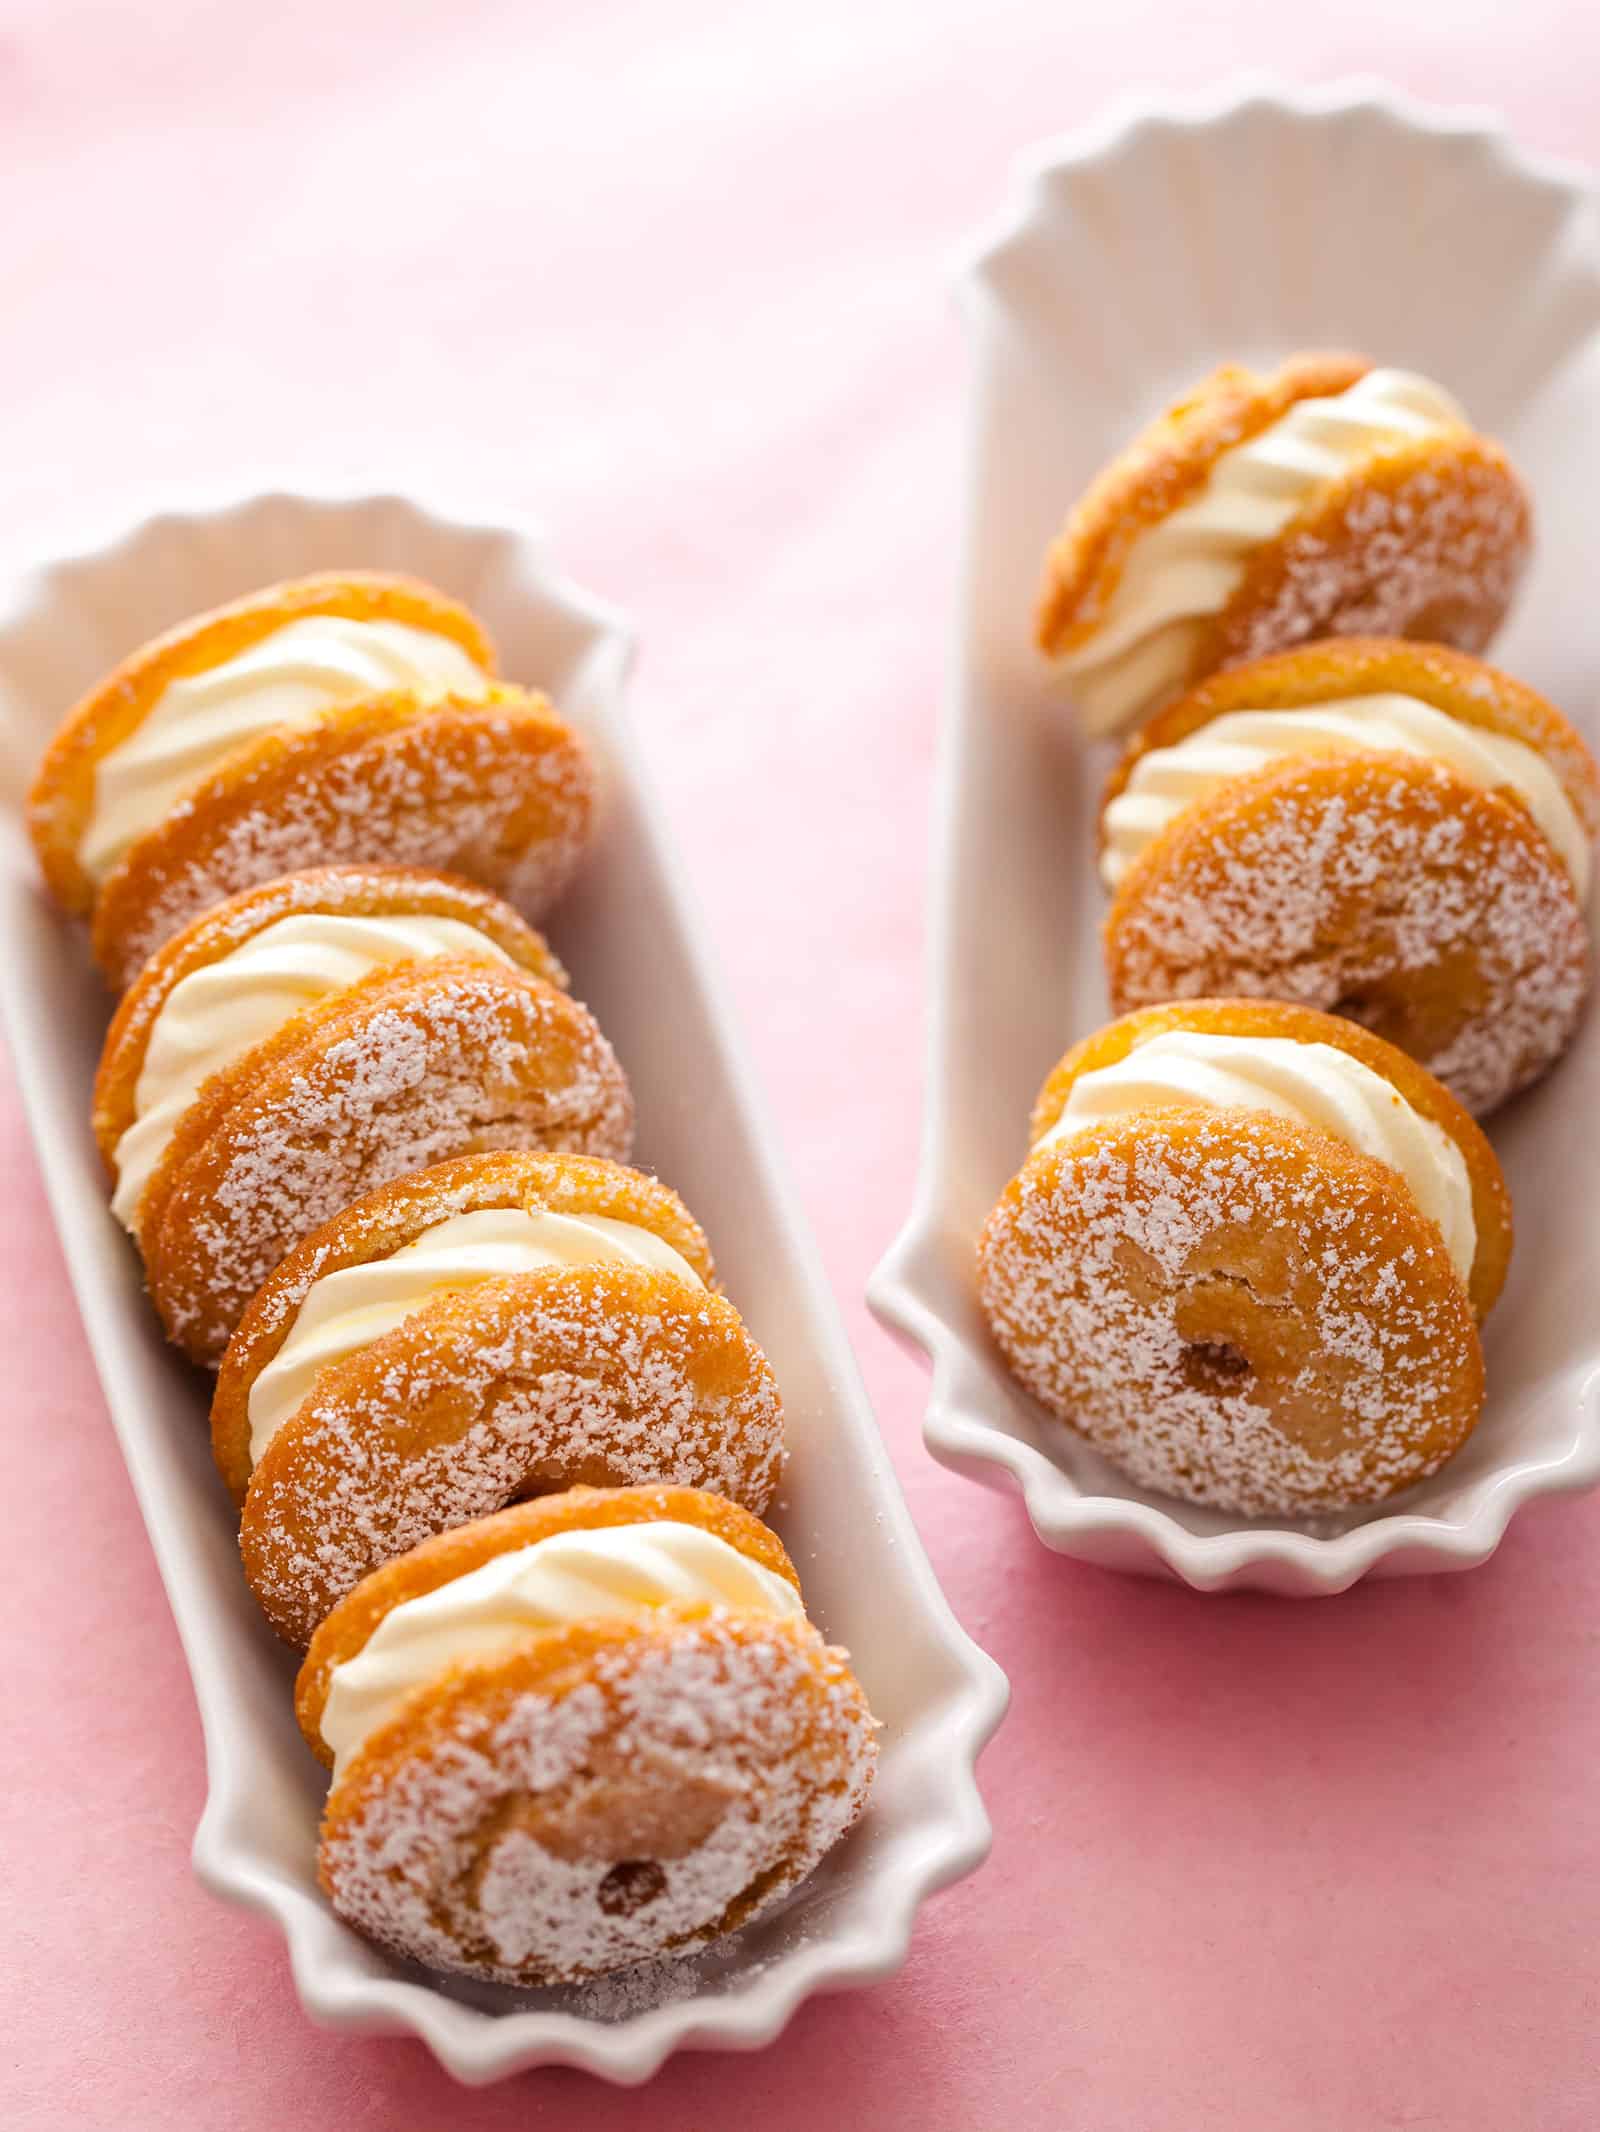 Cream puff doughnuts